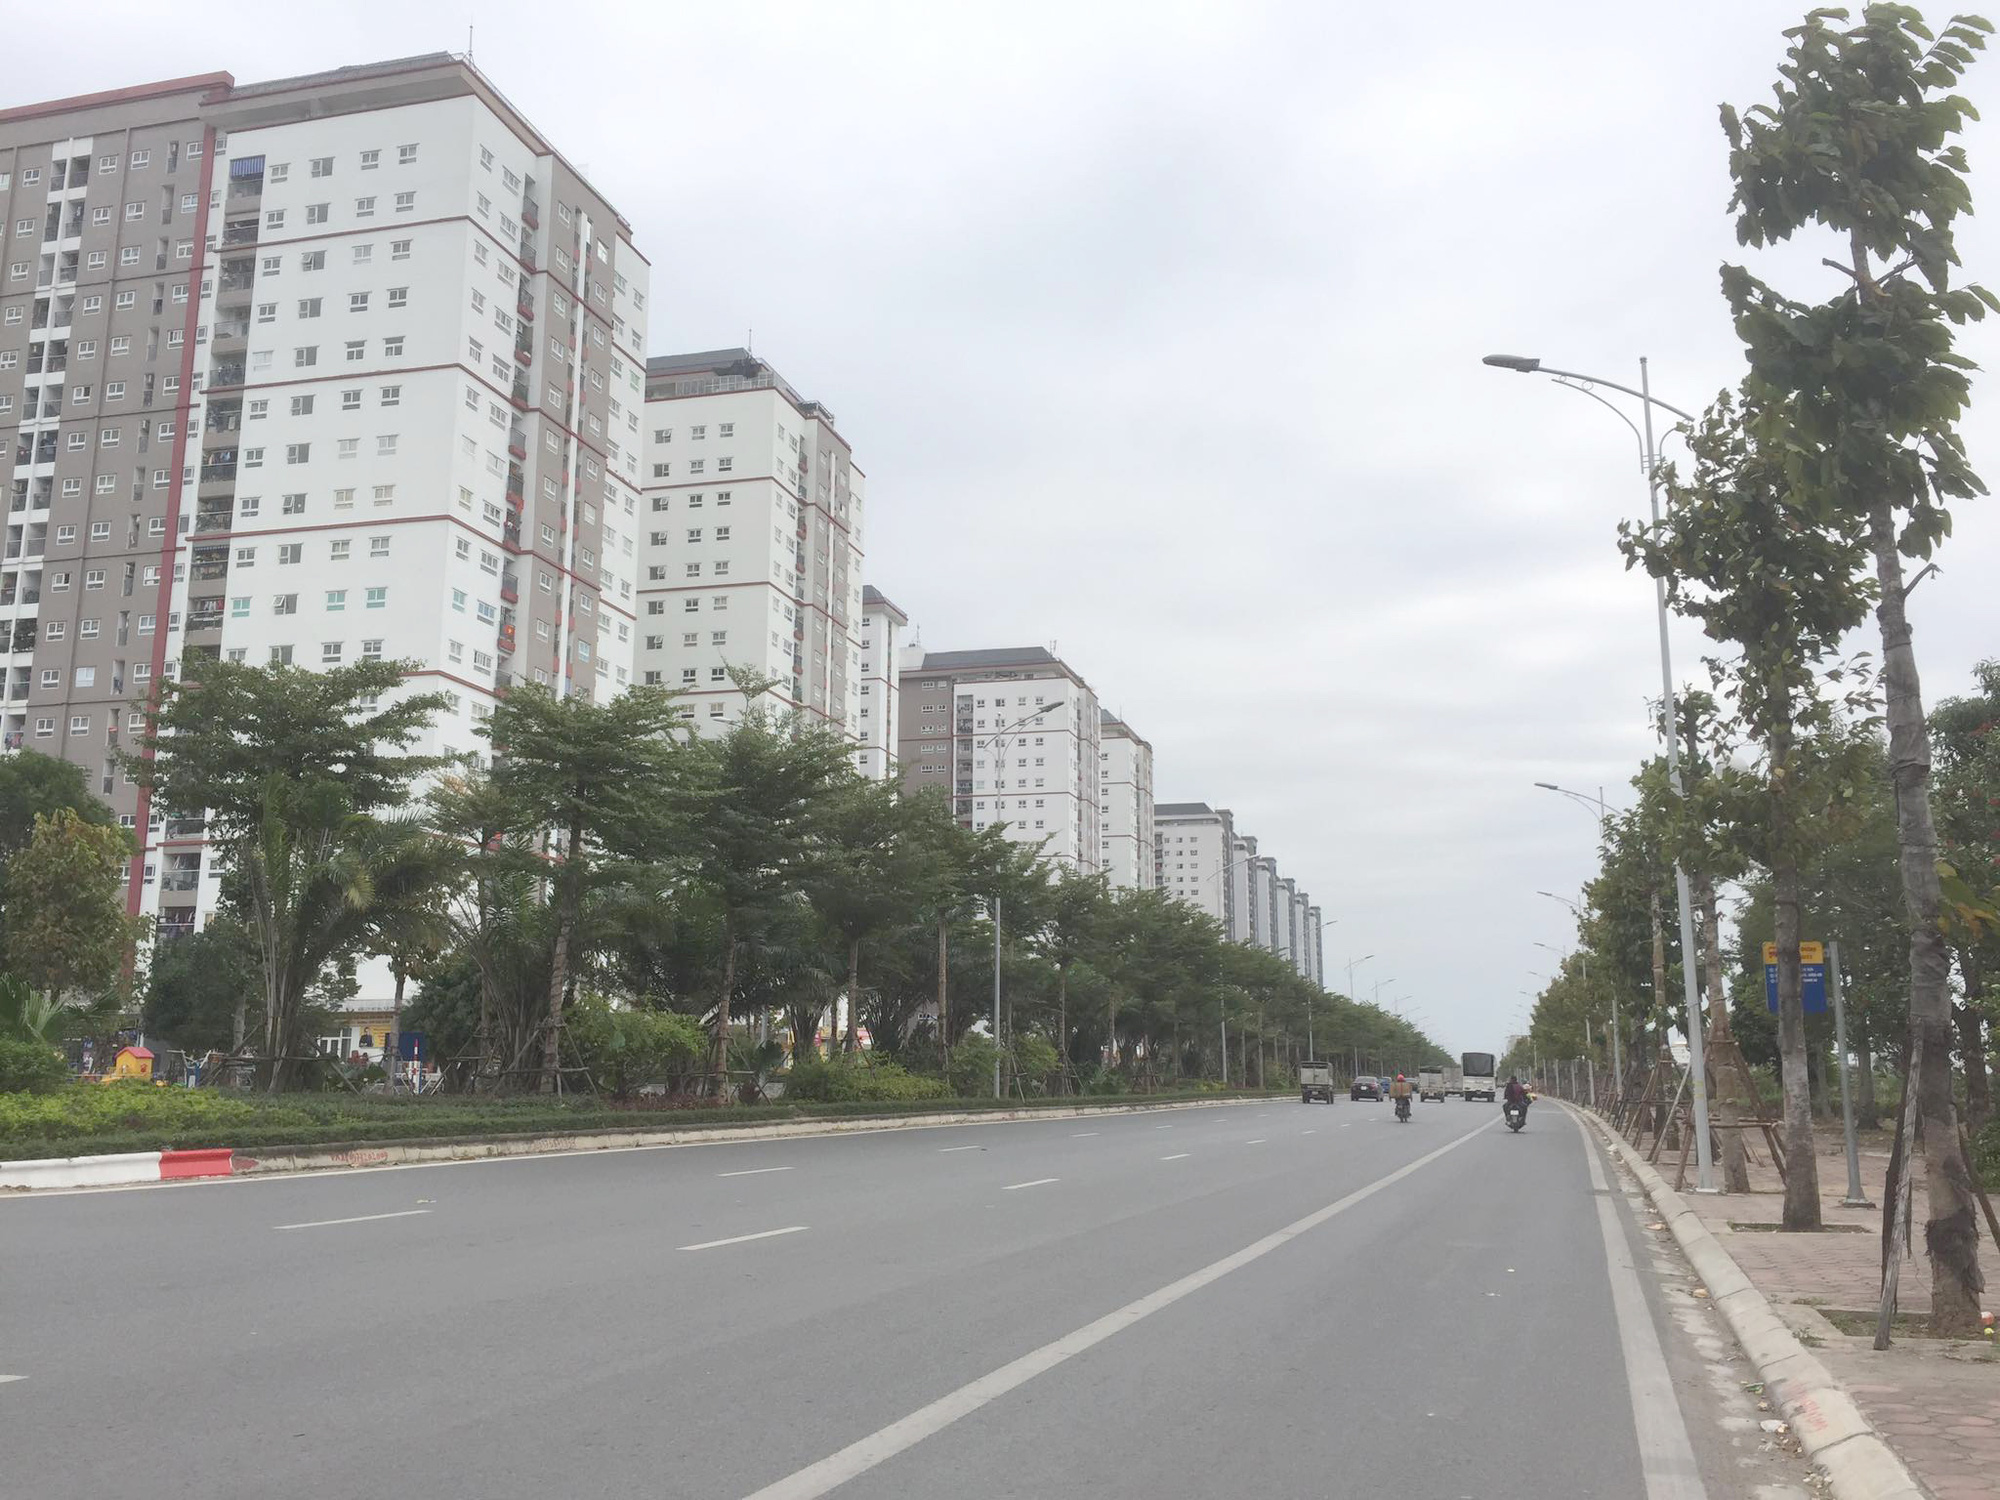 Dân kêu trời vì bỏ tiền tỷ mua đất ở Khu đô thị Thanh Hà nhưng chưa được xây nhà - Ảnh 5.